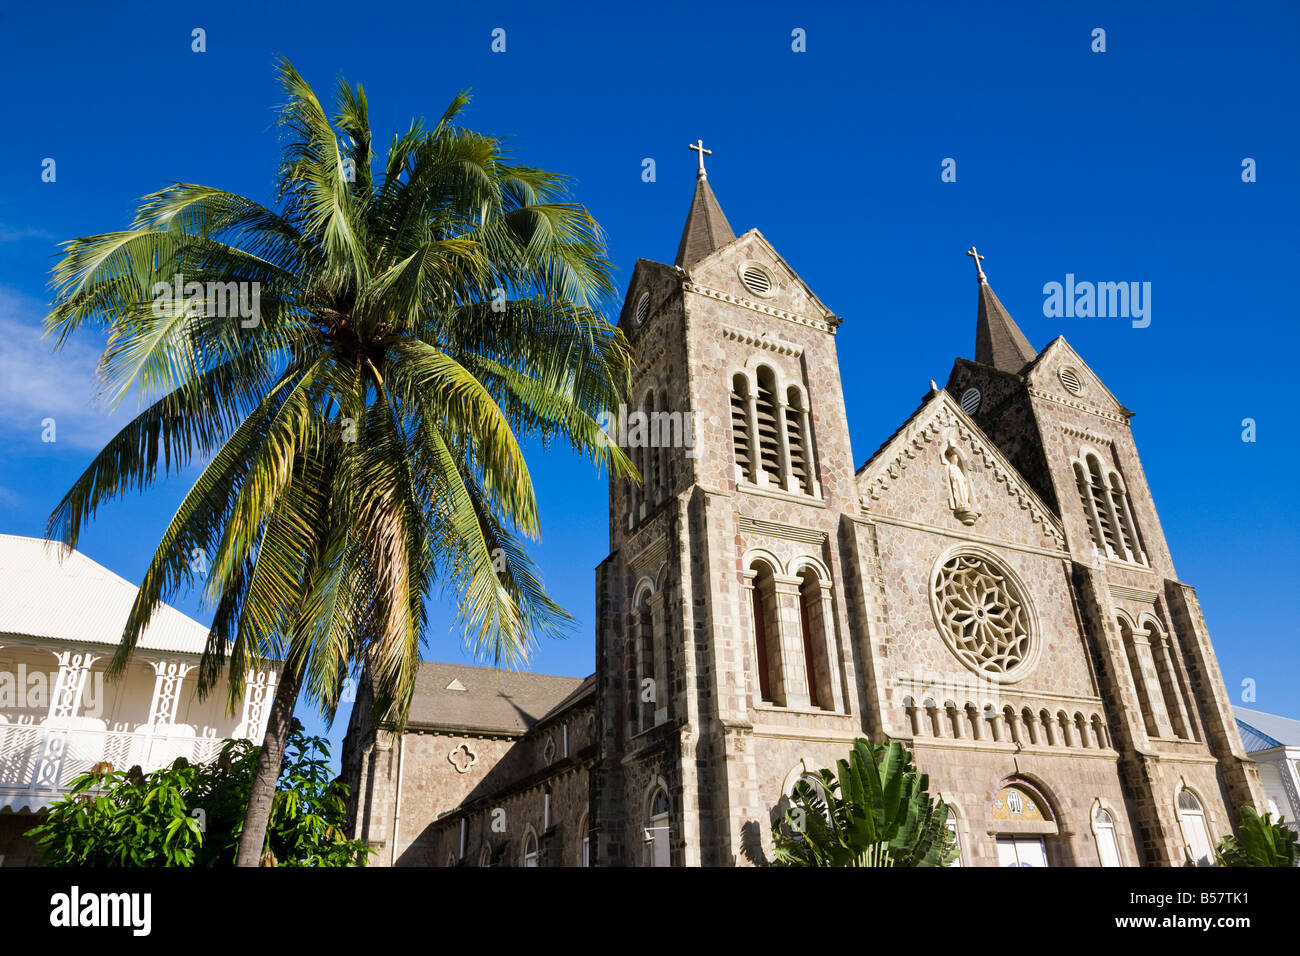 Cattedrale dell Immacolata Concezione, Basseterre, Saint Kitts, Isole Sottovento, West Indies, dei Caraibi e America centrale Foto Stock